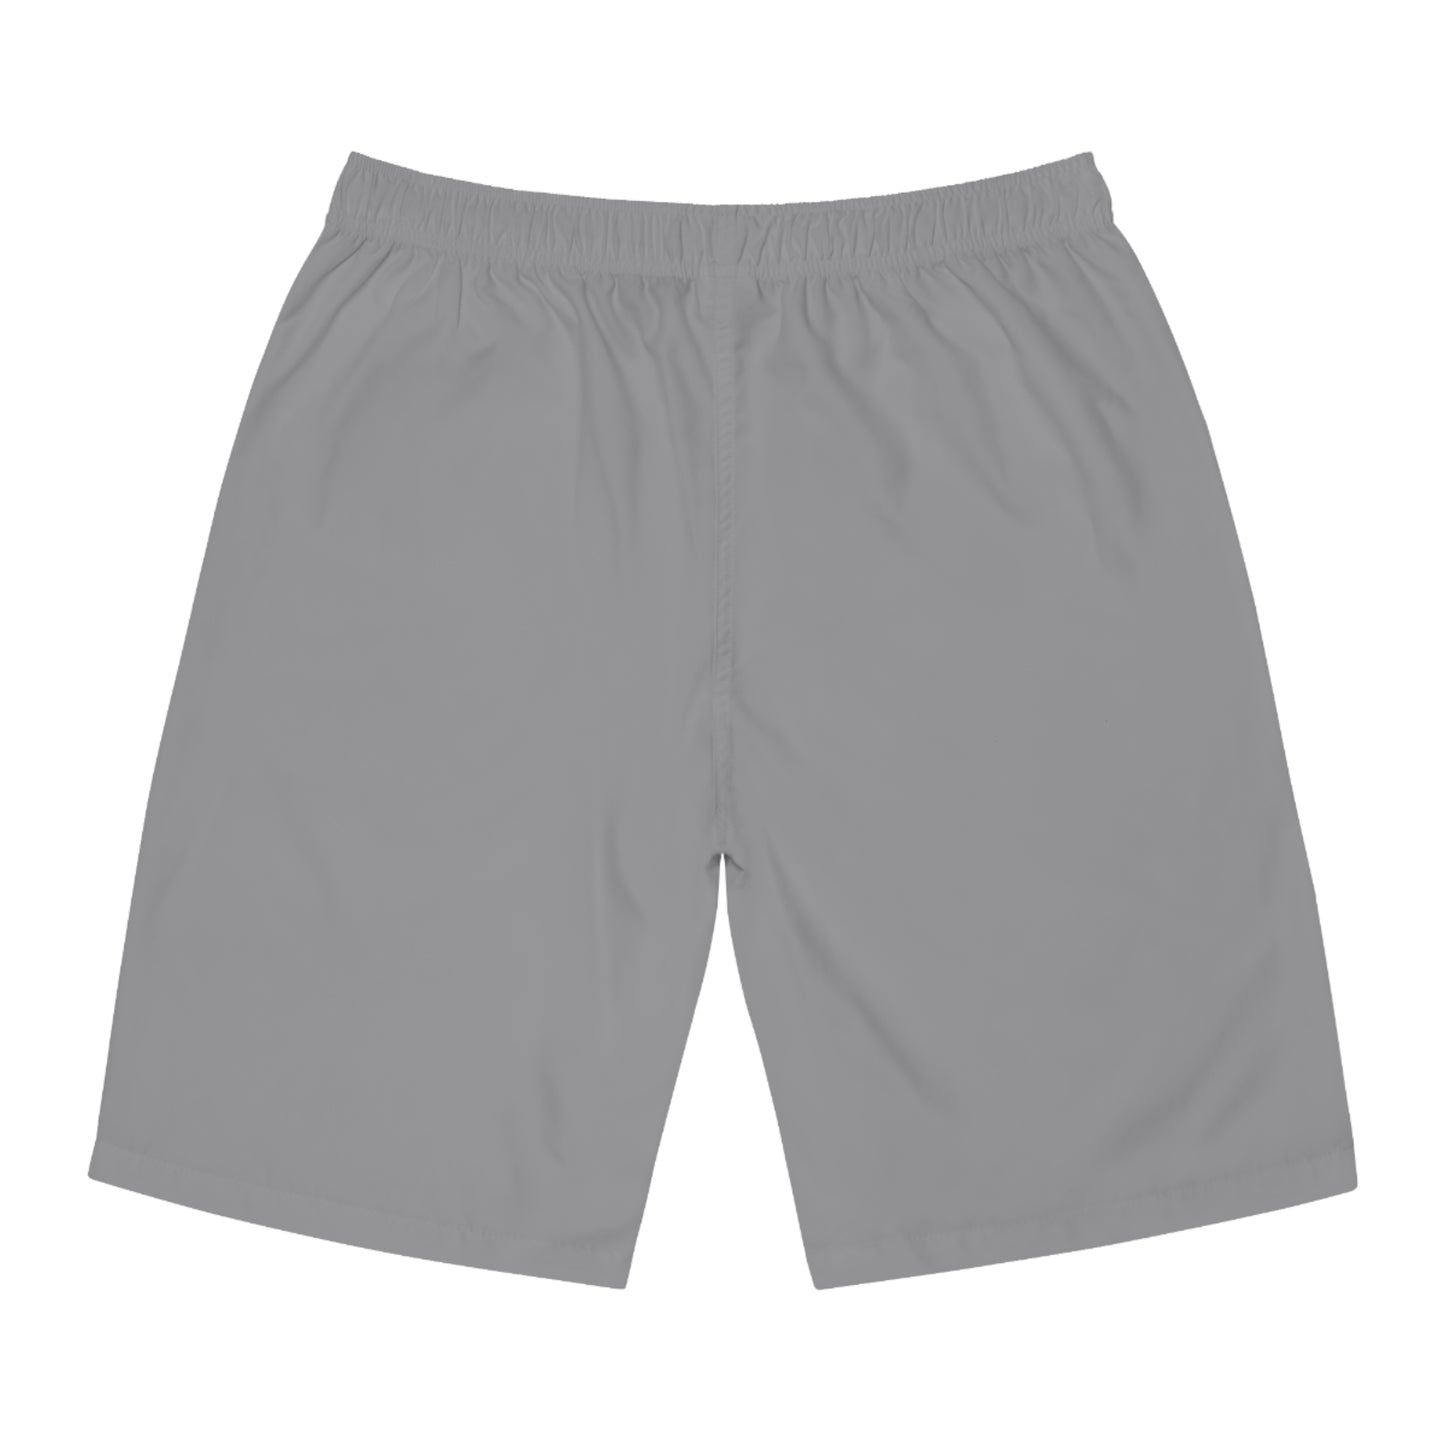 2 - Board shorts III% 1776